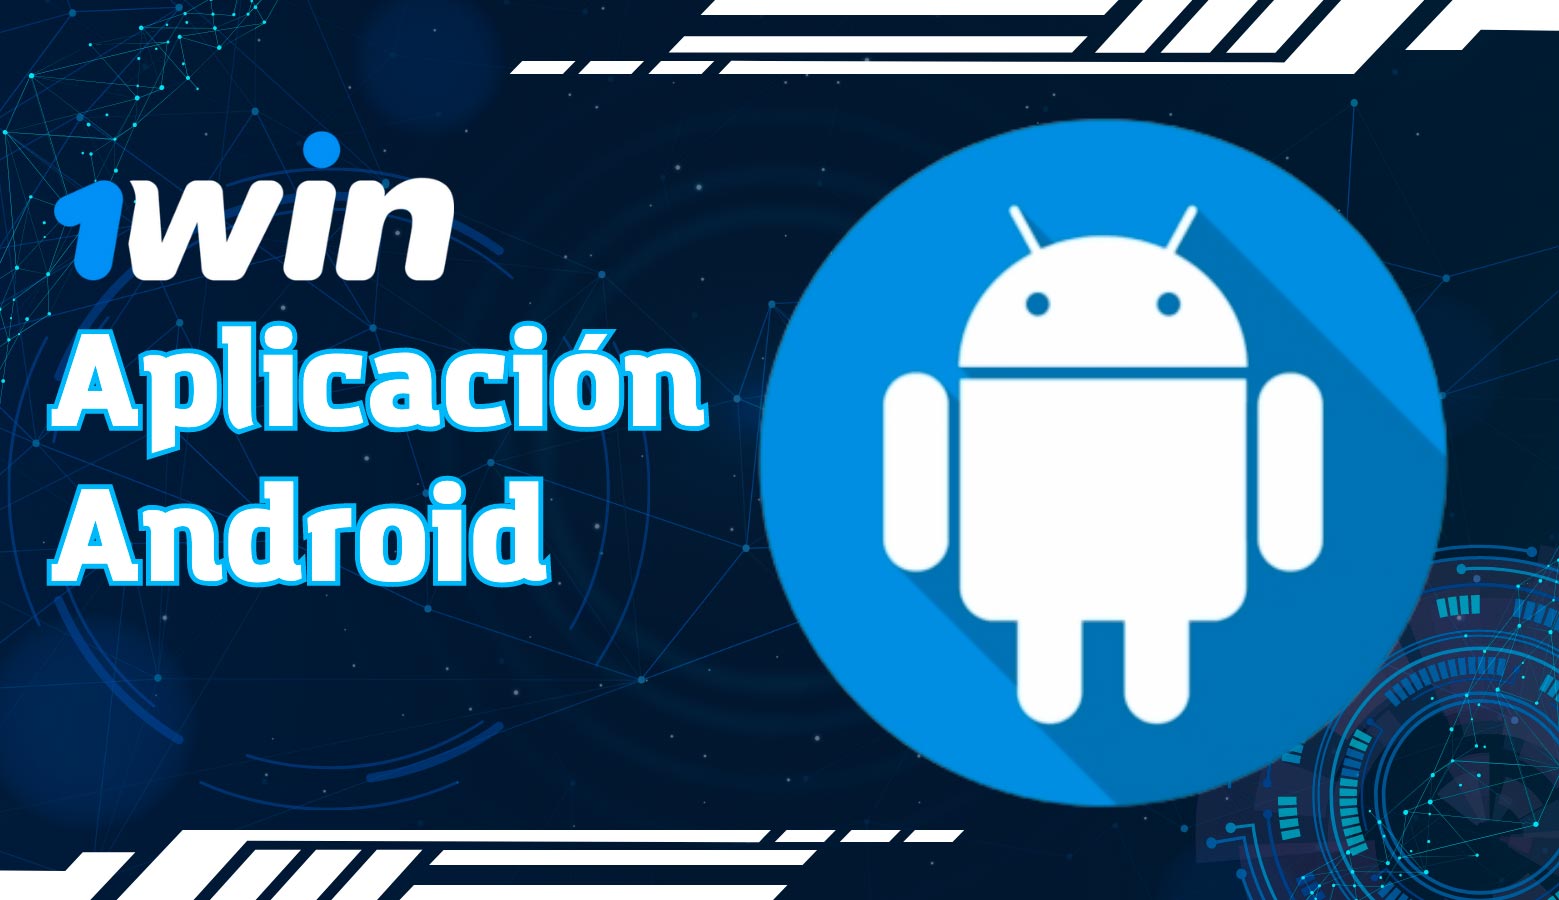 Los usuarios de dispositivos Android también pueden descargar e instalar la aplicación 1win